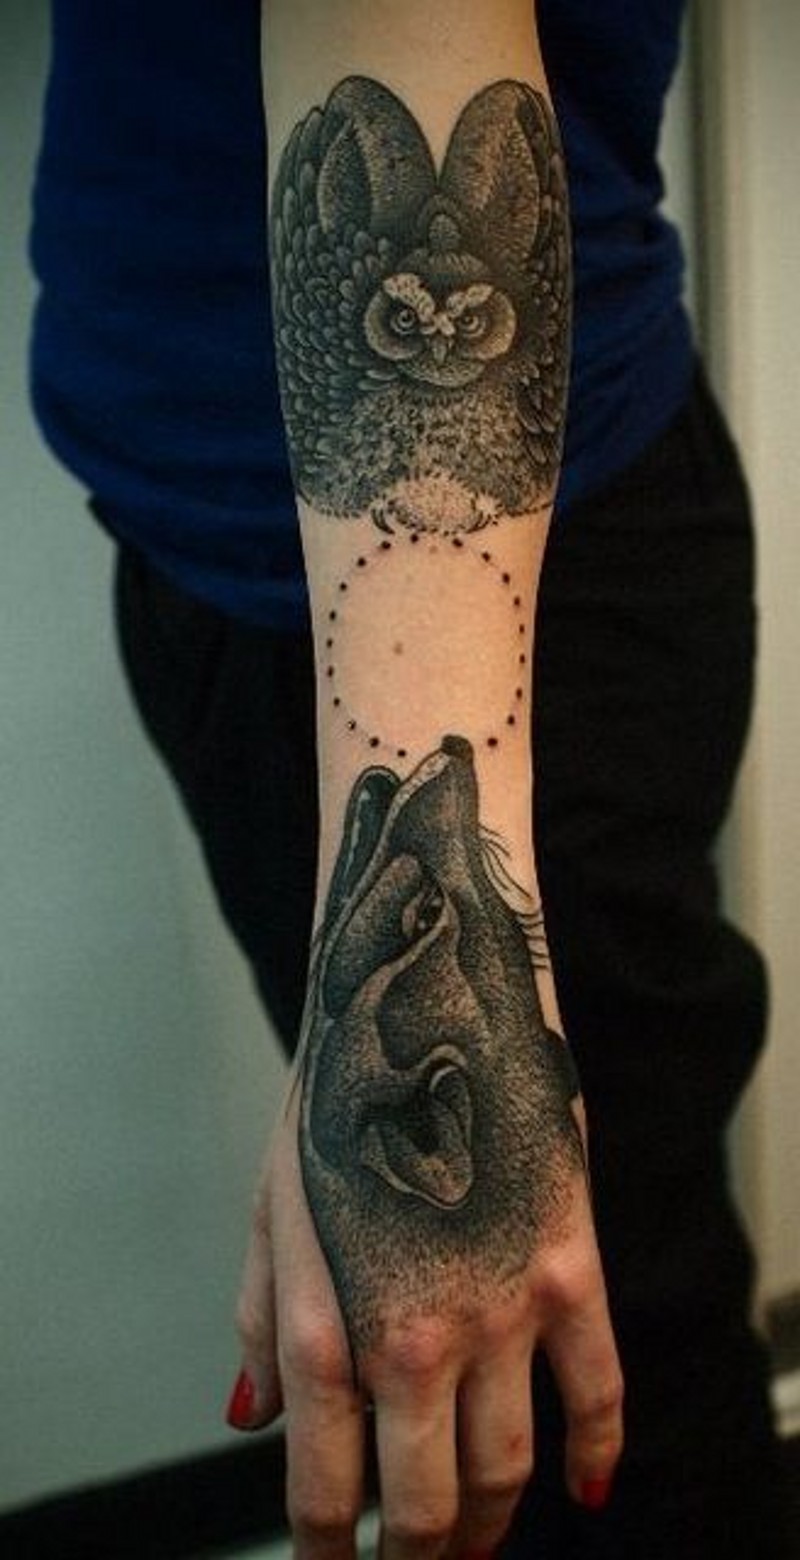 手臂狐狸头像与猫头鹰写实纹身图案